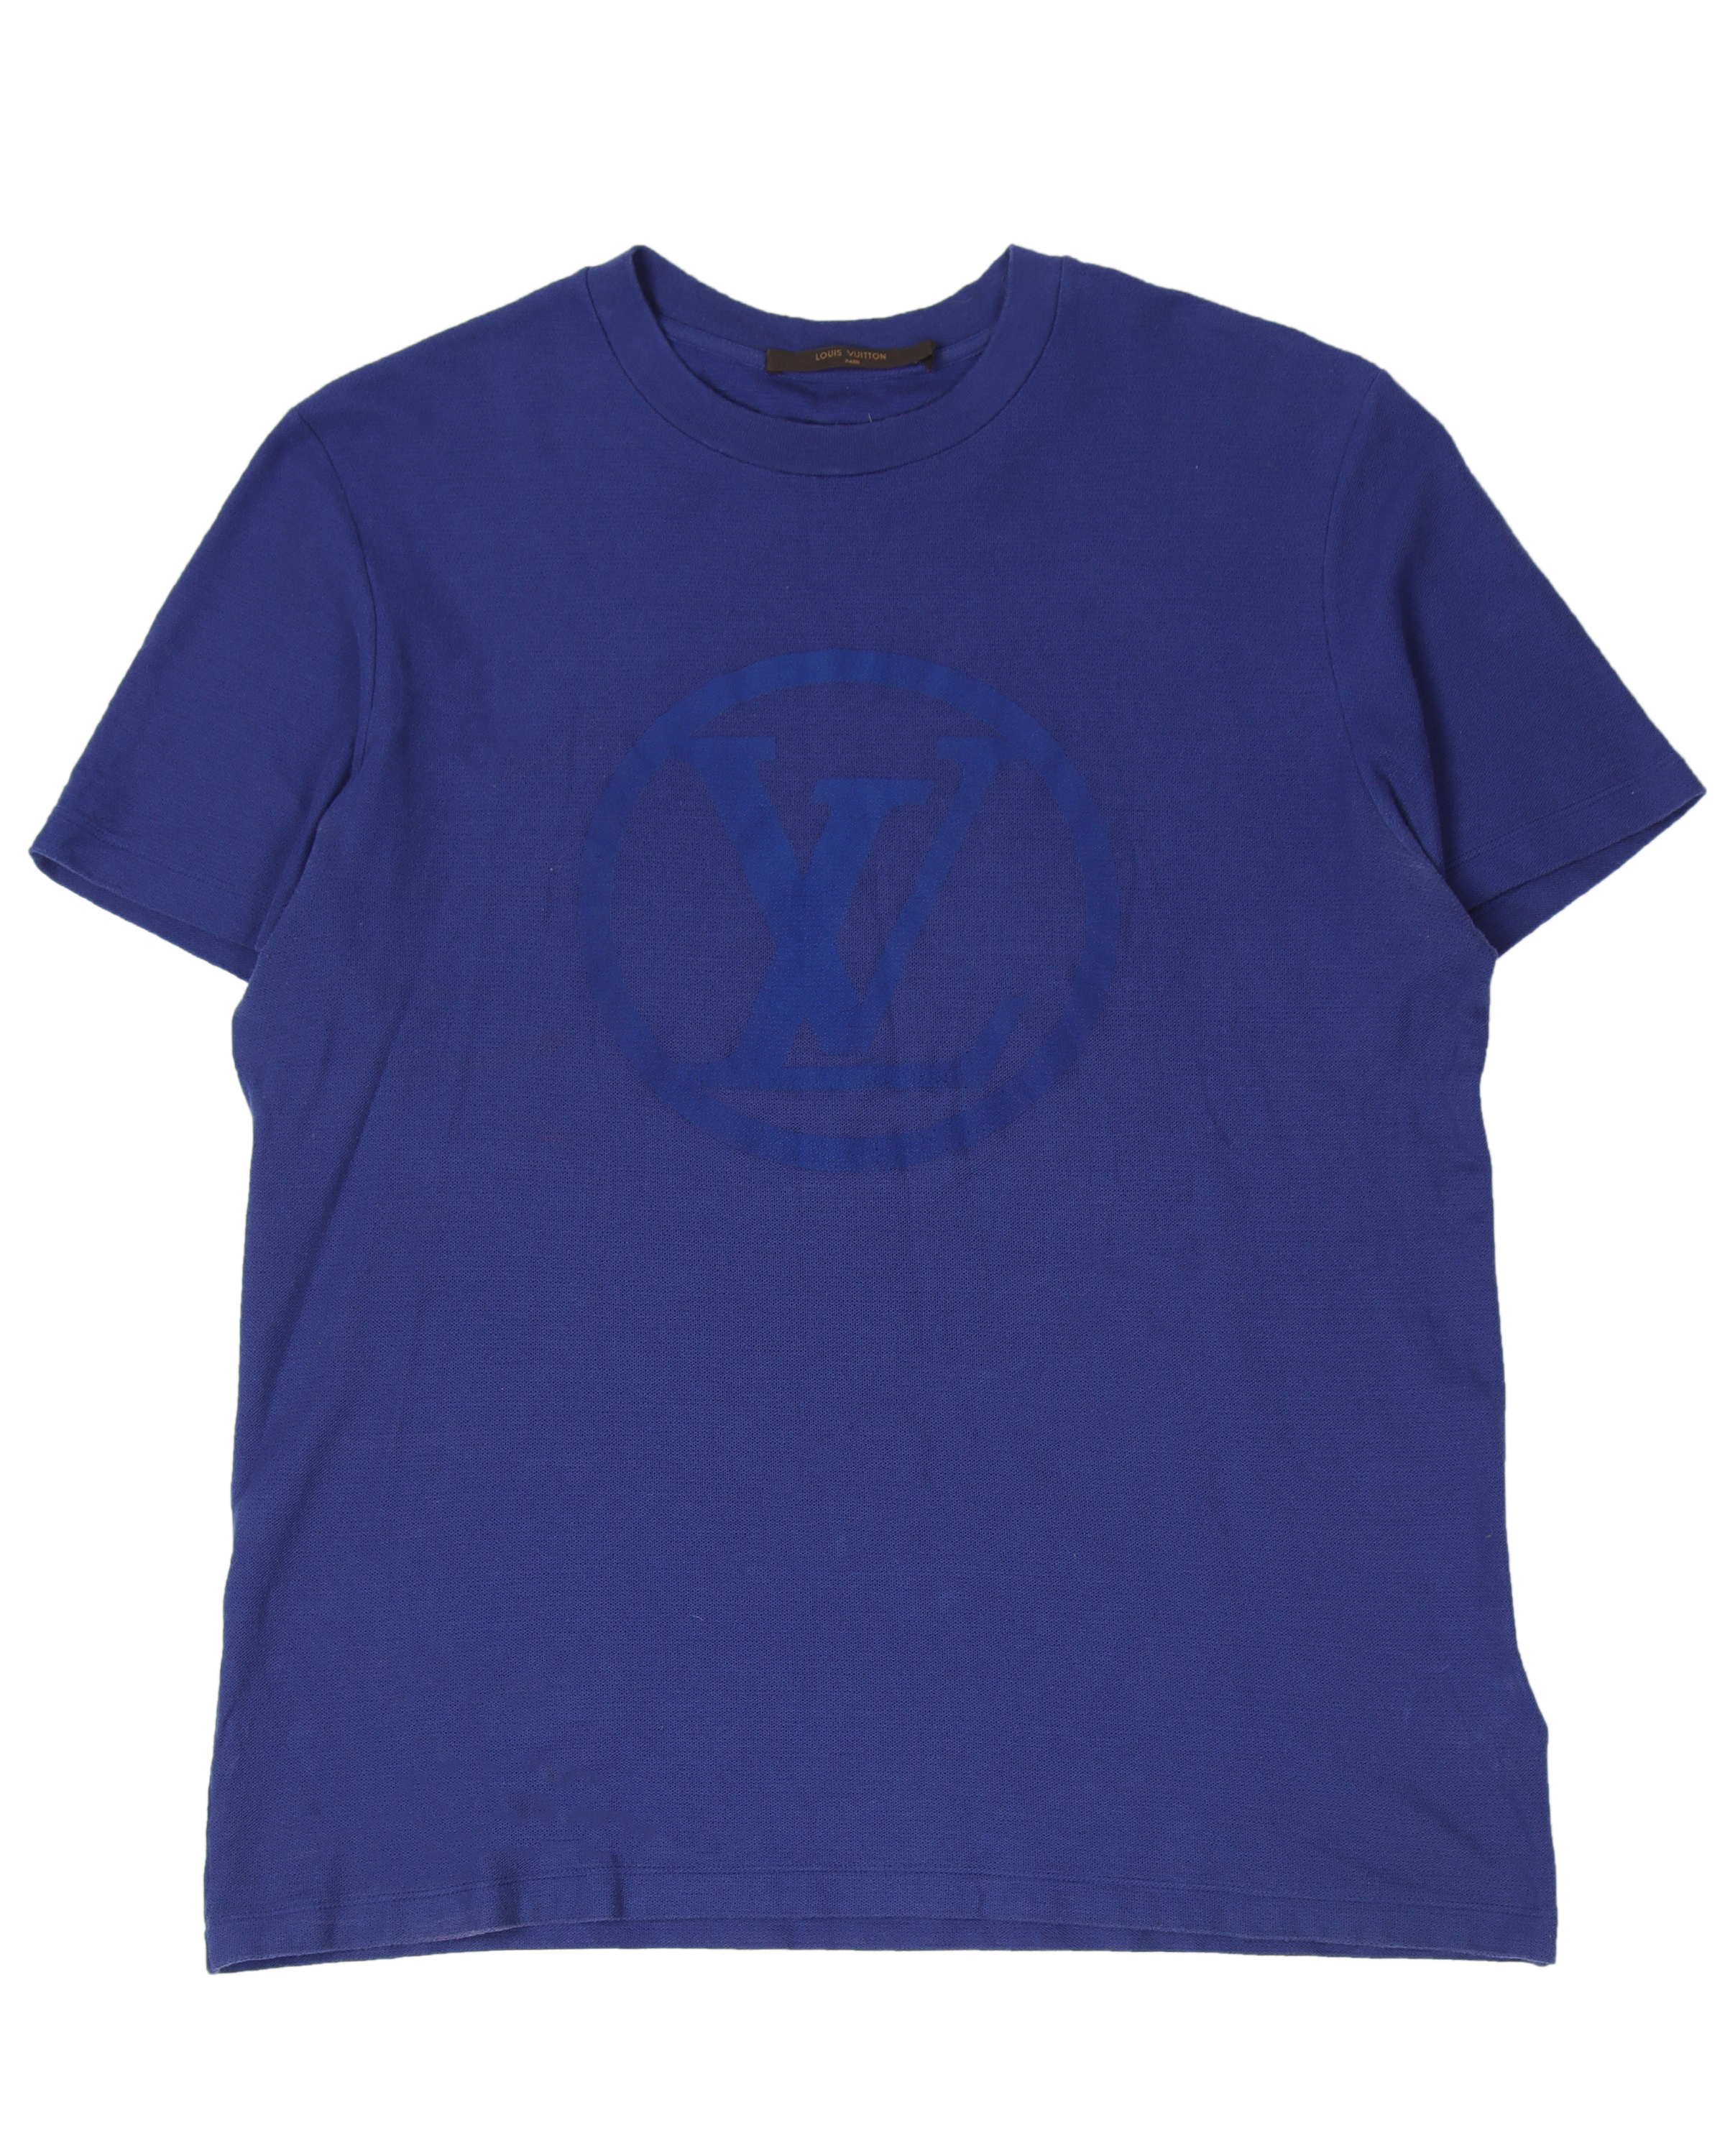 Tonal "LV" Logo T-Shirt